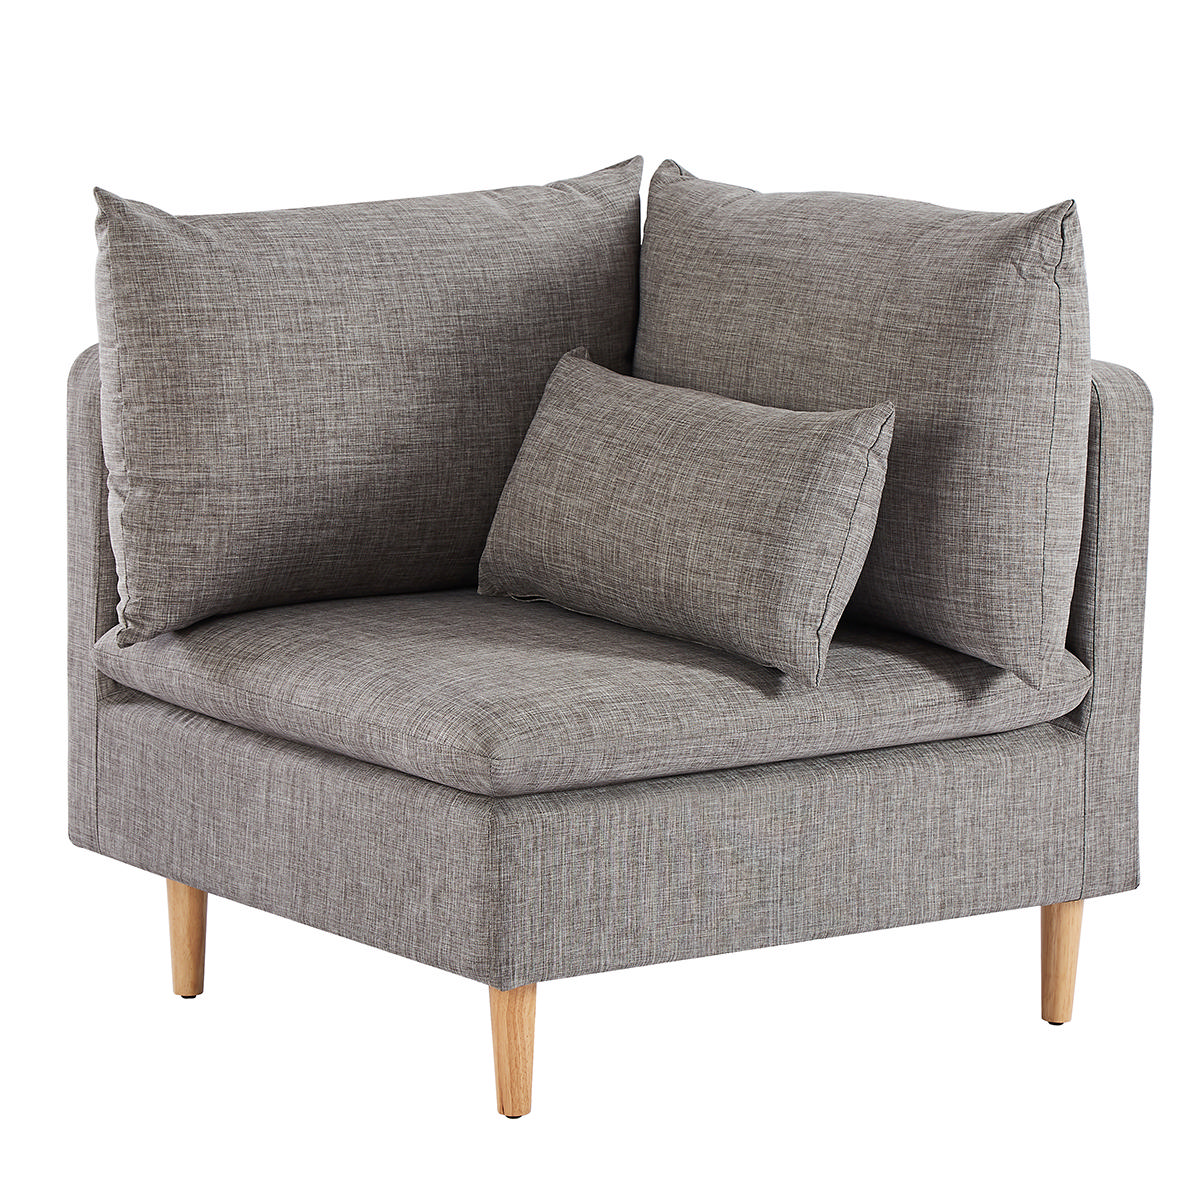 36.61 inch Armless Sofa